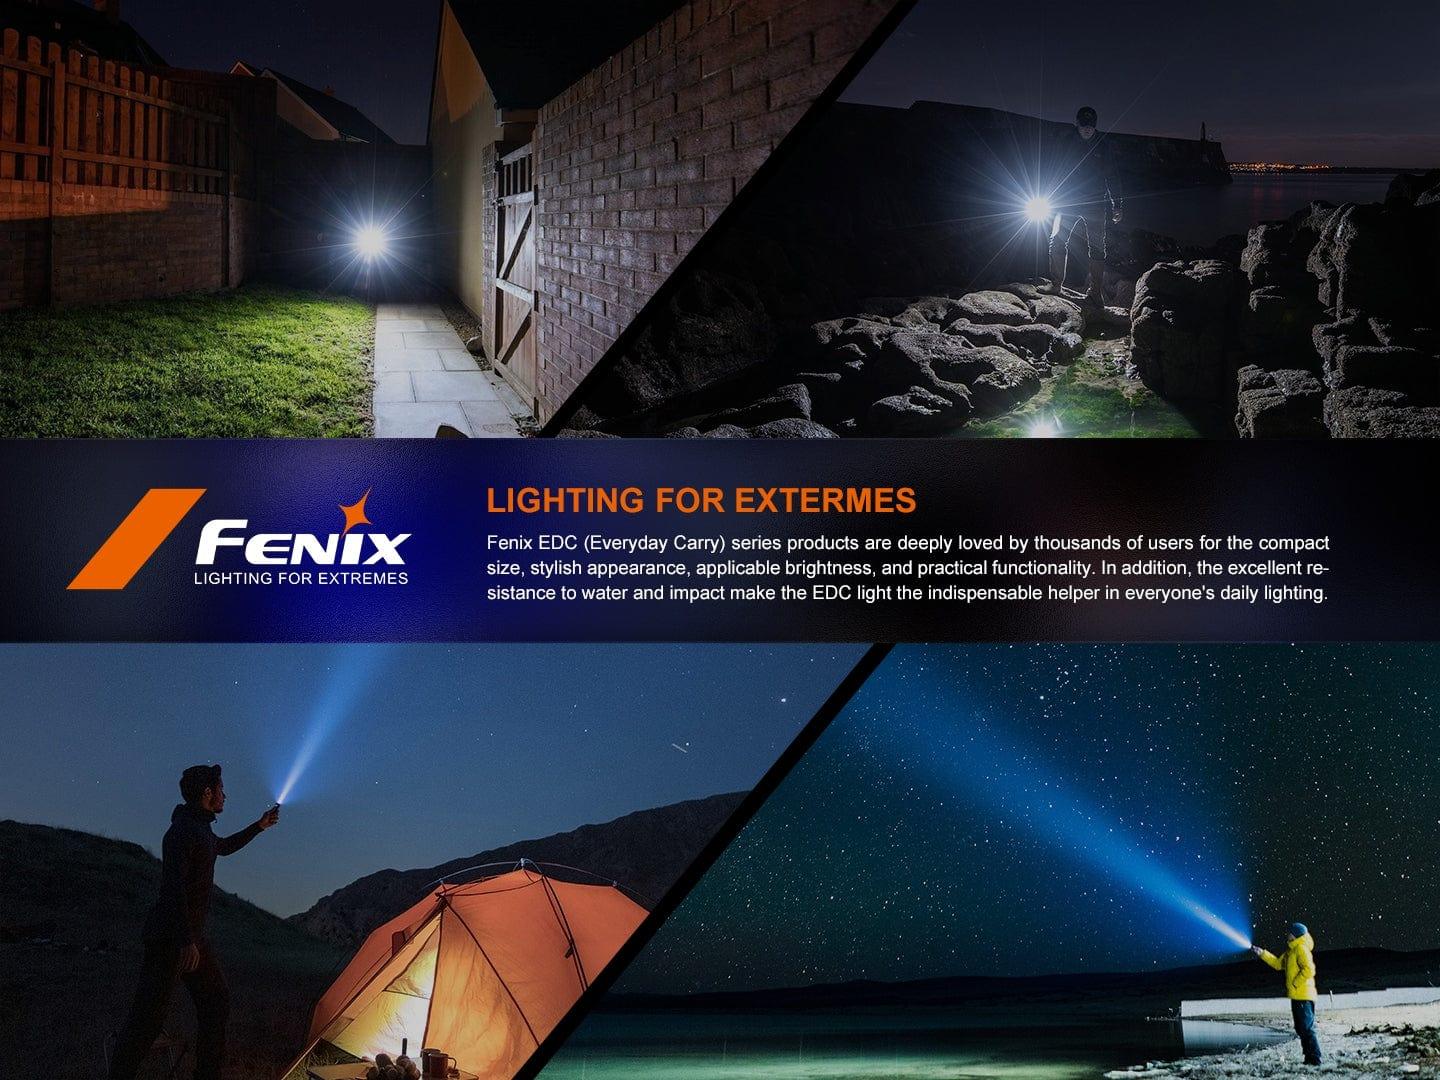 Fenix E-CP - Lampe rechargeable 1600 Lumens avec Batterie externe Revendeur Officiel Lampes FENIX depuis 2008 | Votre Boutique en ligne FENIX®